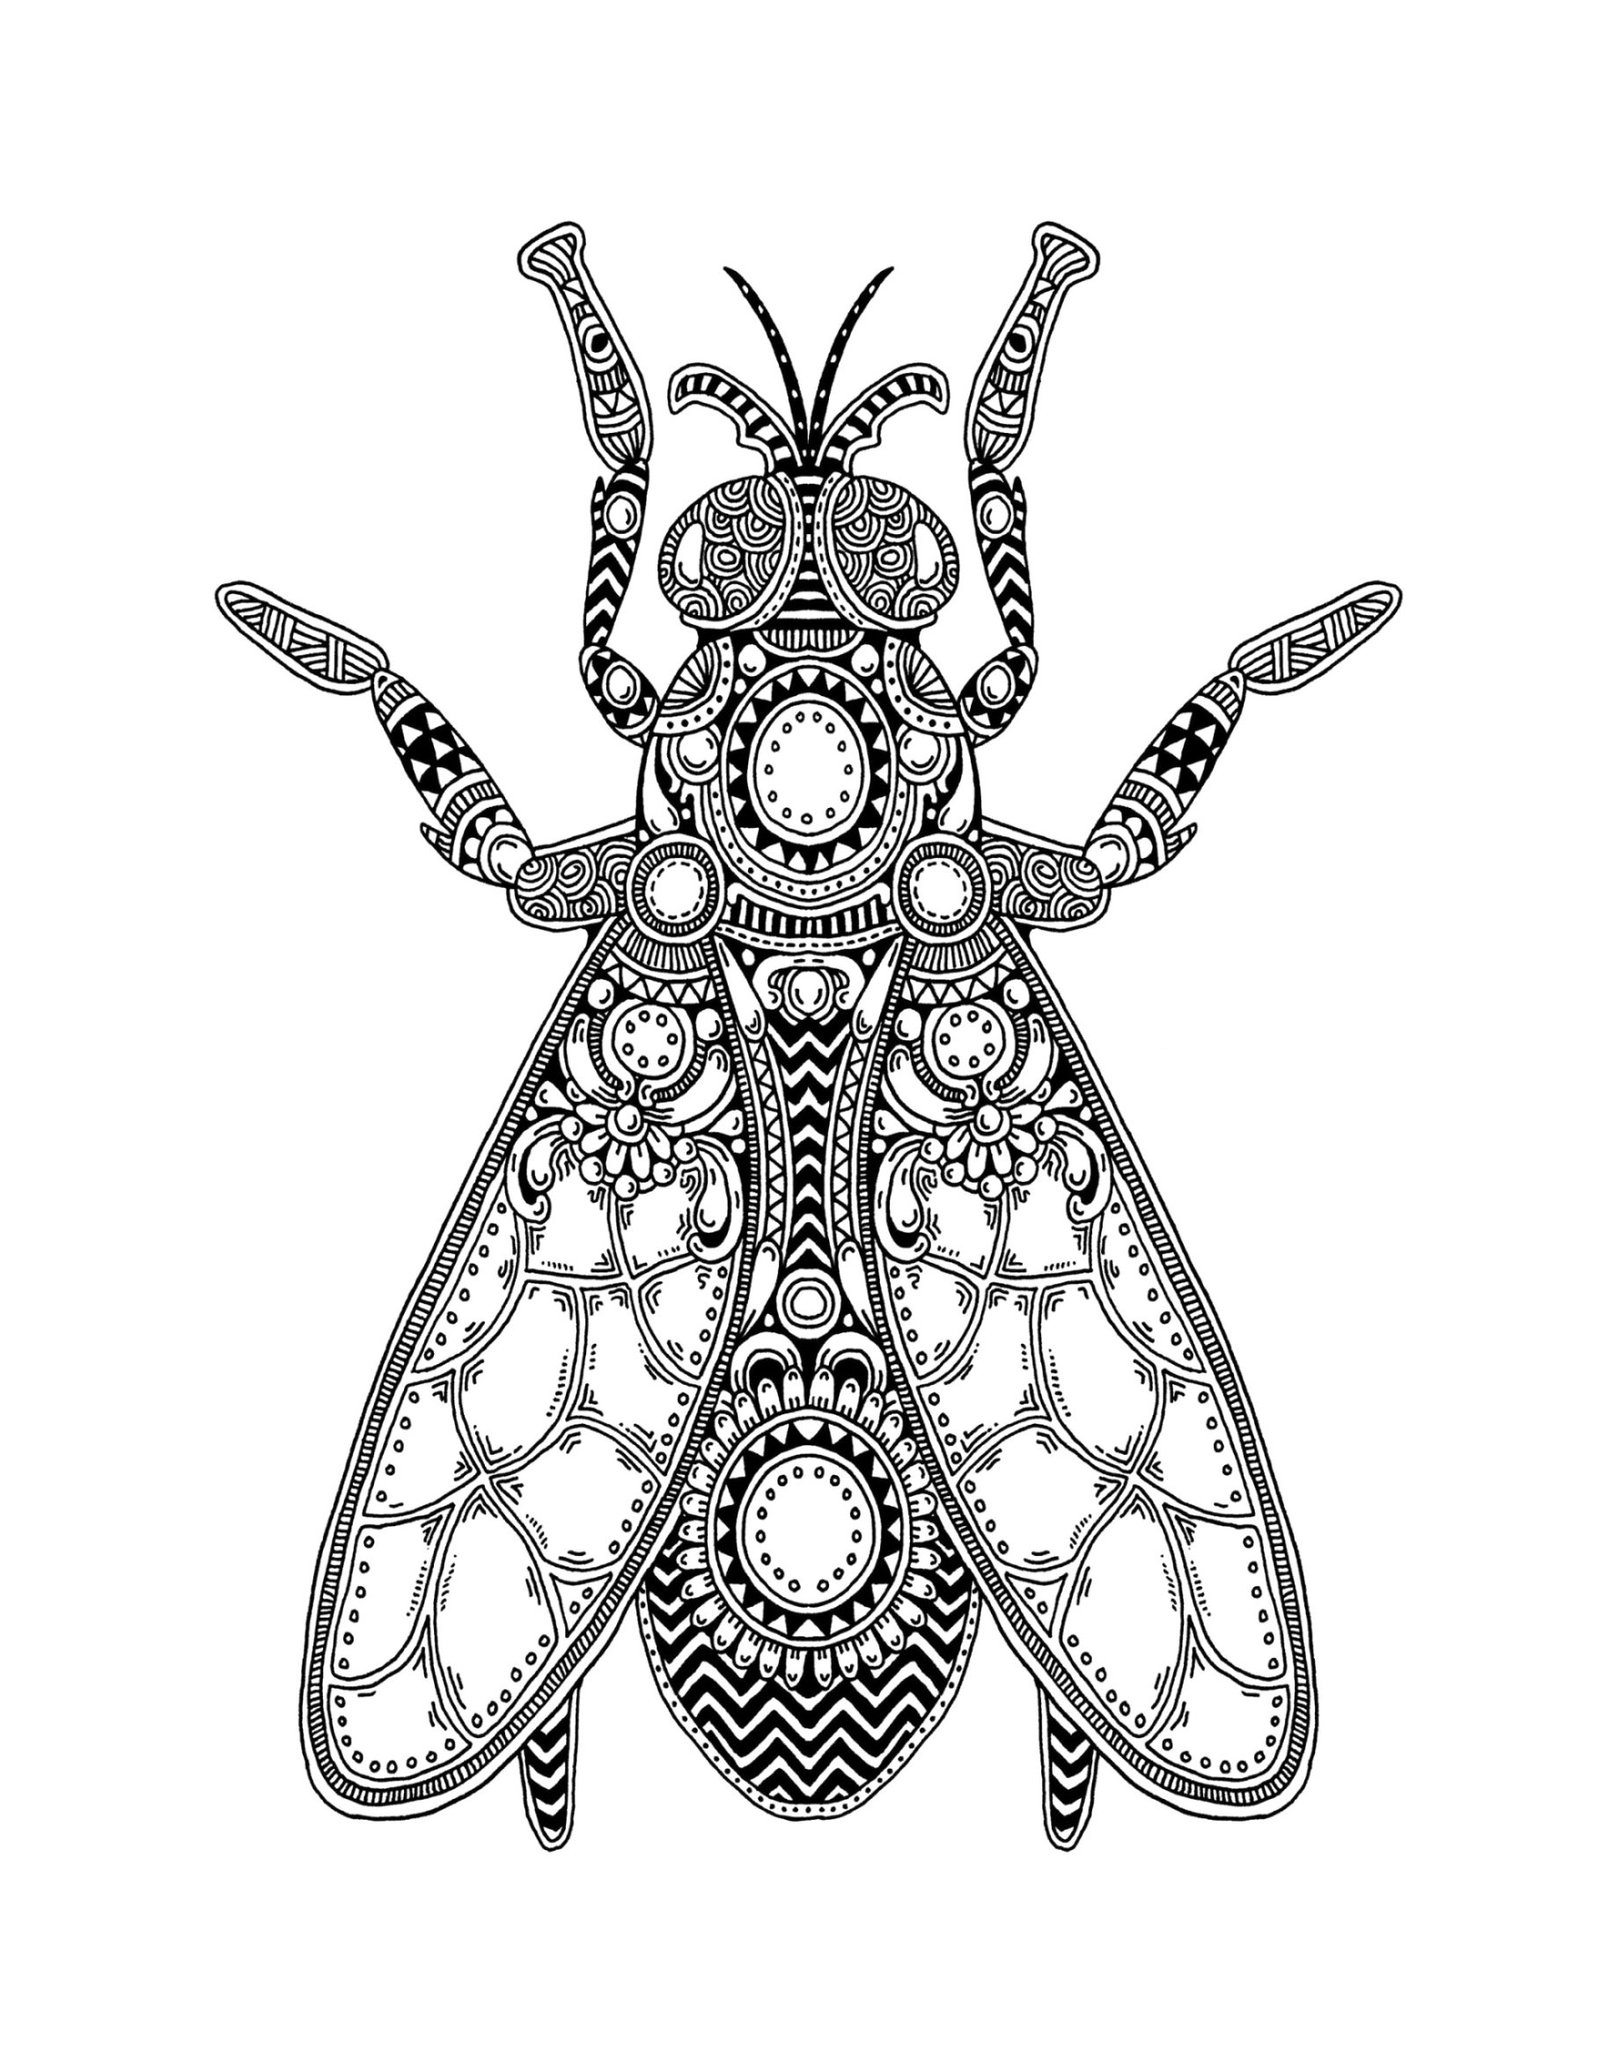 Coloriage Mouche, Mandala de Mouche, un dessin insecte anti-stress gratuit à imprimer sur iColorify.com